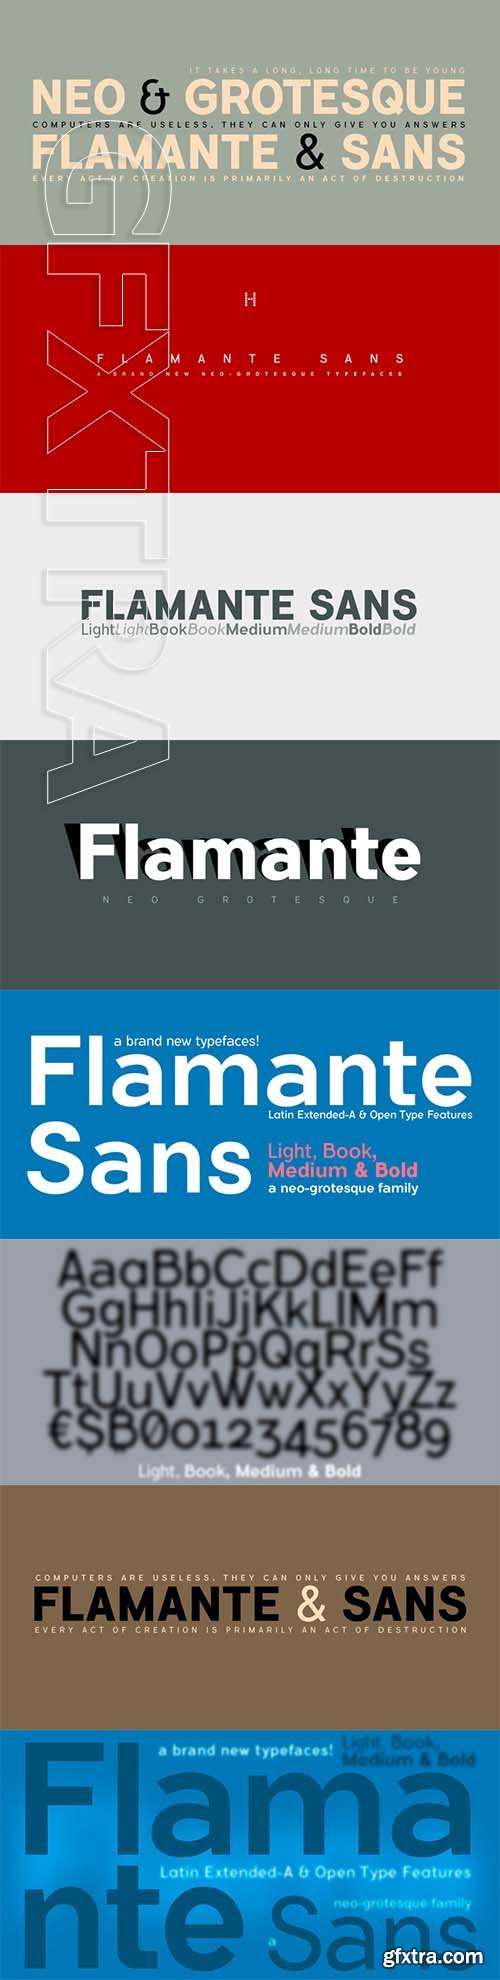 Flamante Sans font family